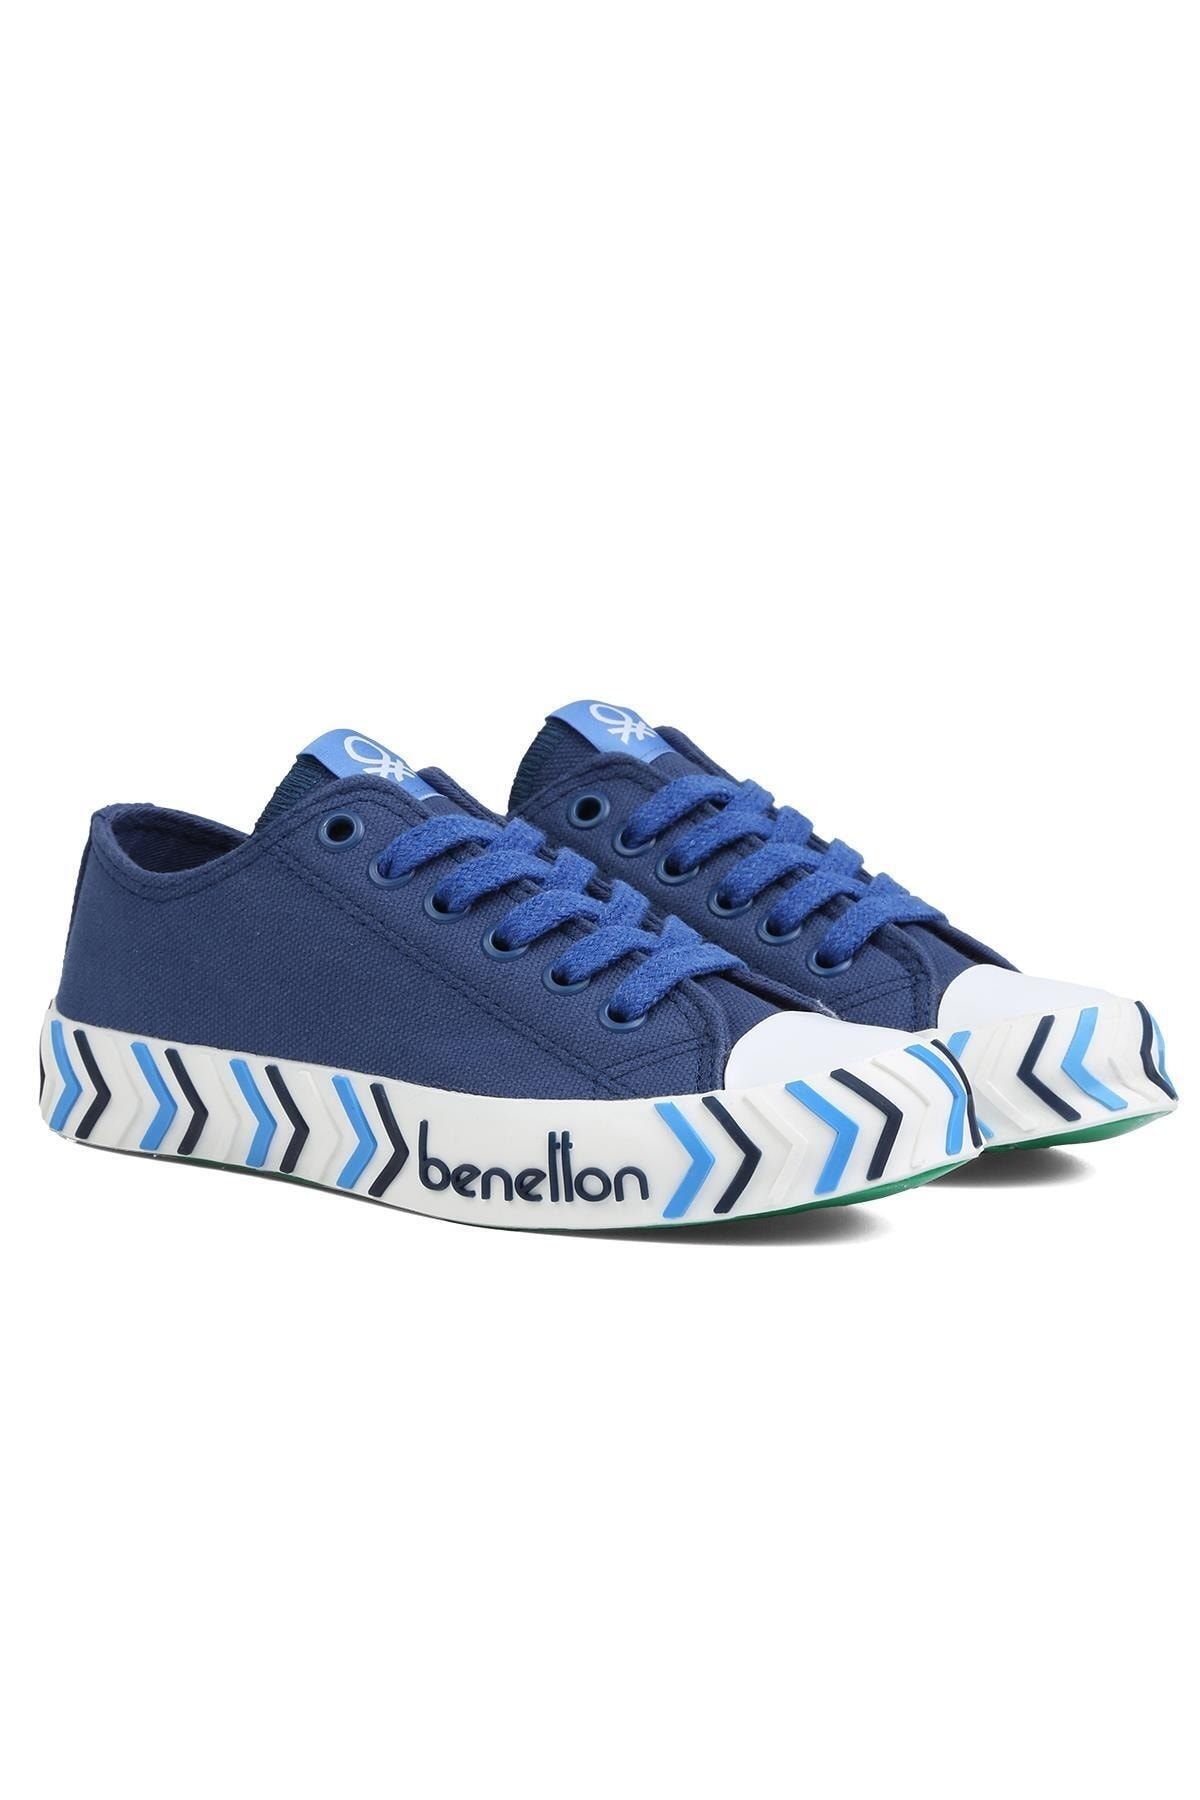 Benetton ® | BN-90624-Lacivert-Kadın Spor Ayakkabı